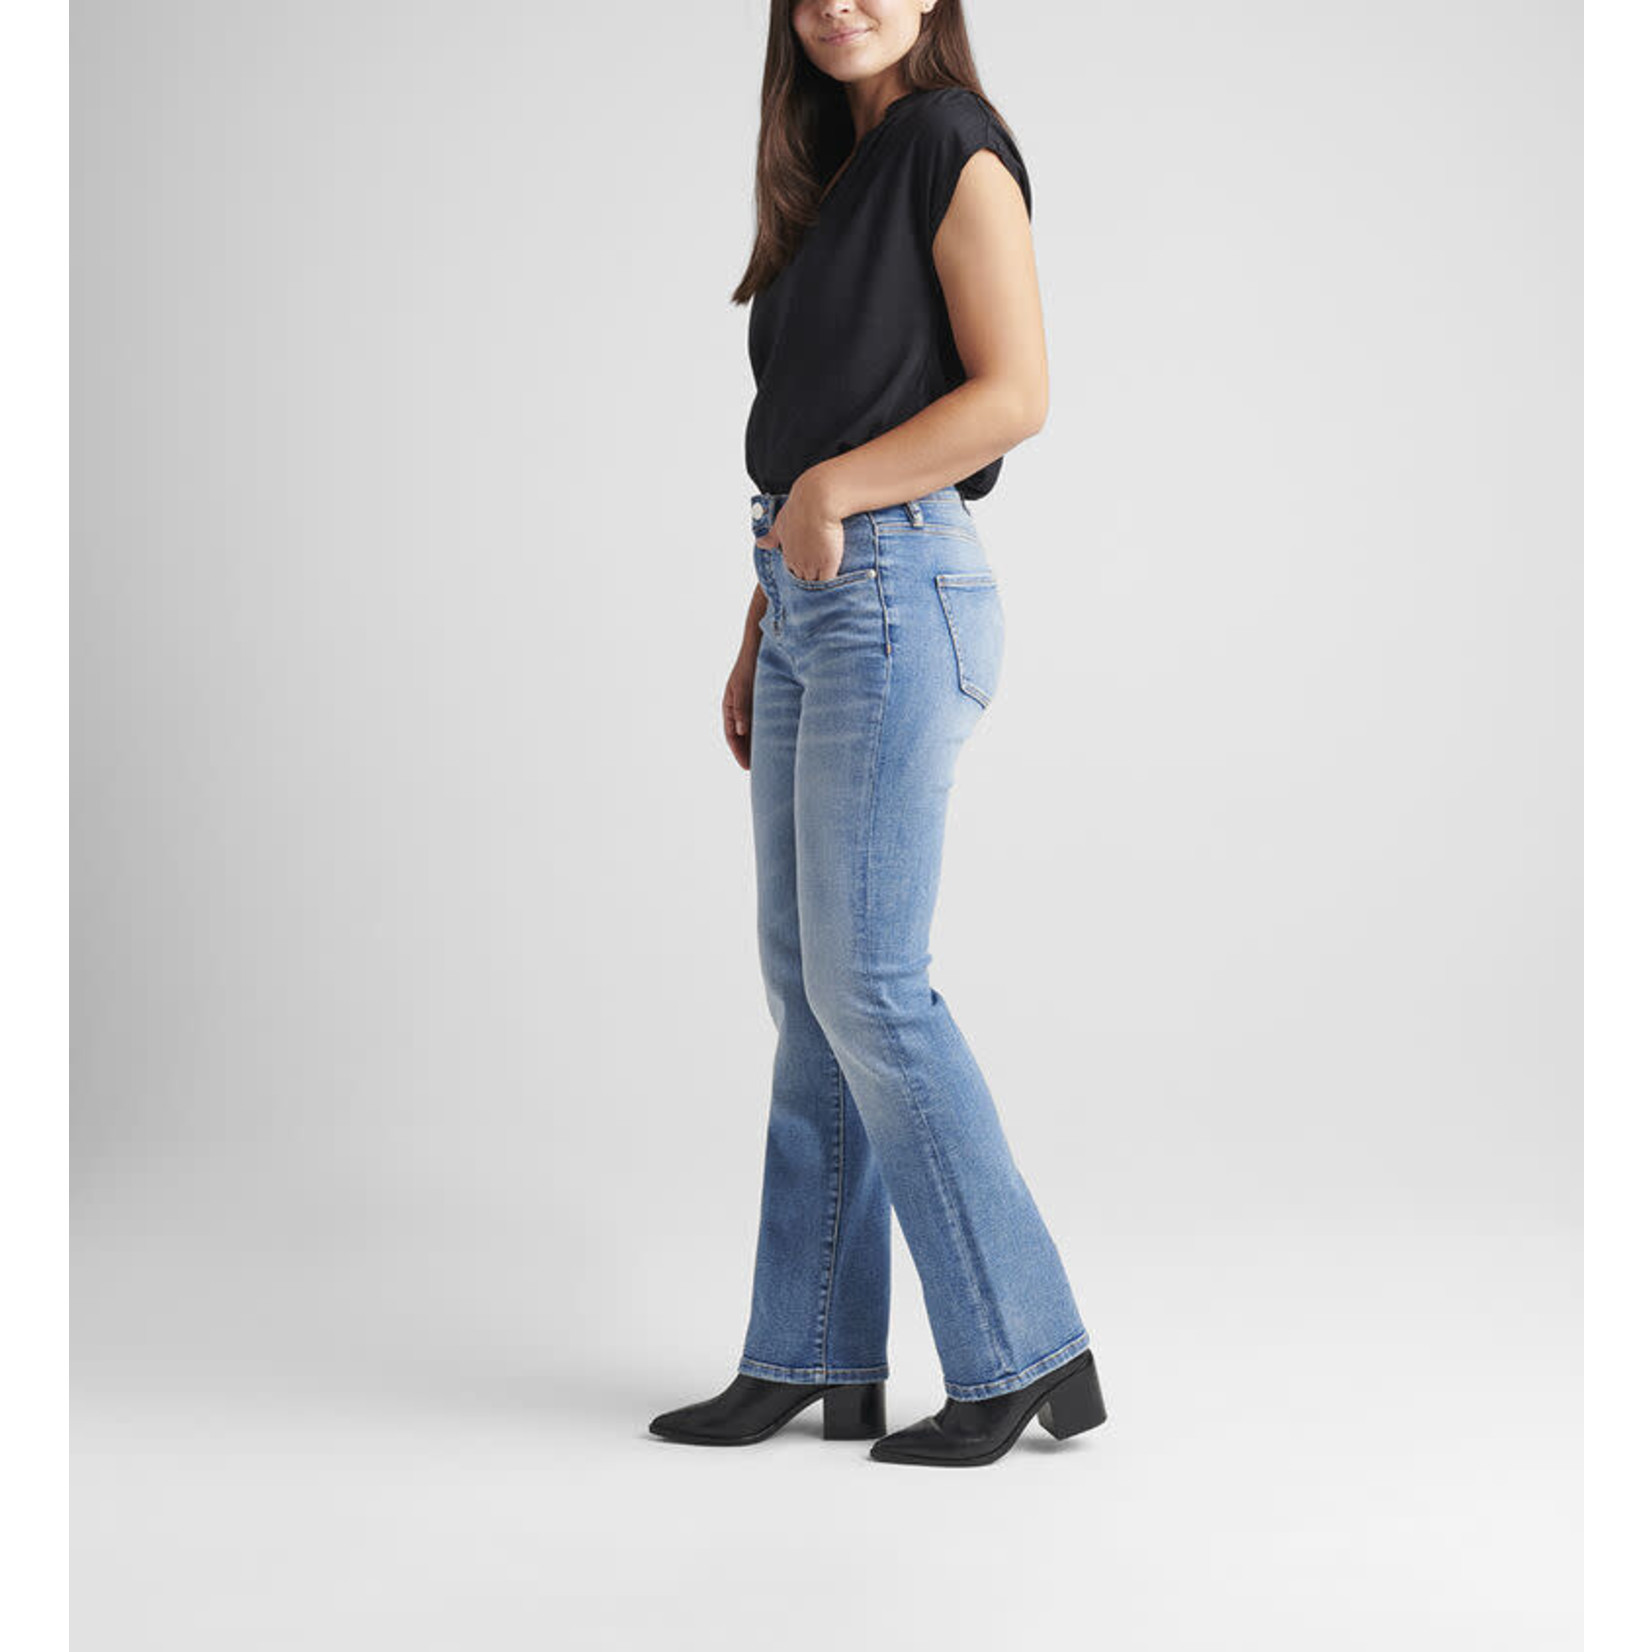 Jag Phoebe High Rise Boot Cut Jeans  - JS811SAT206